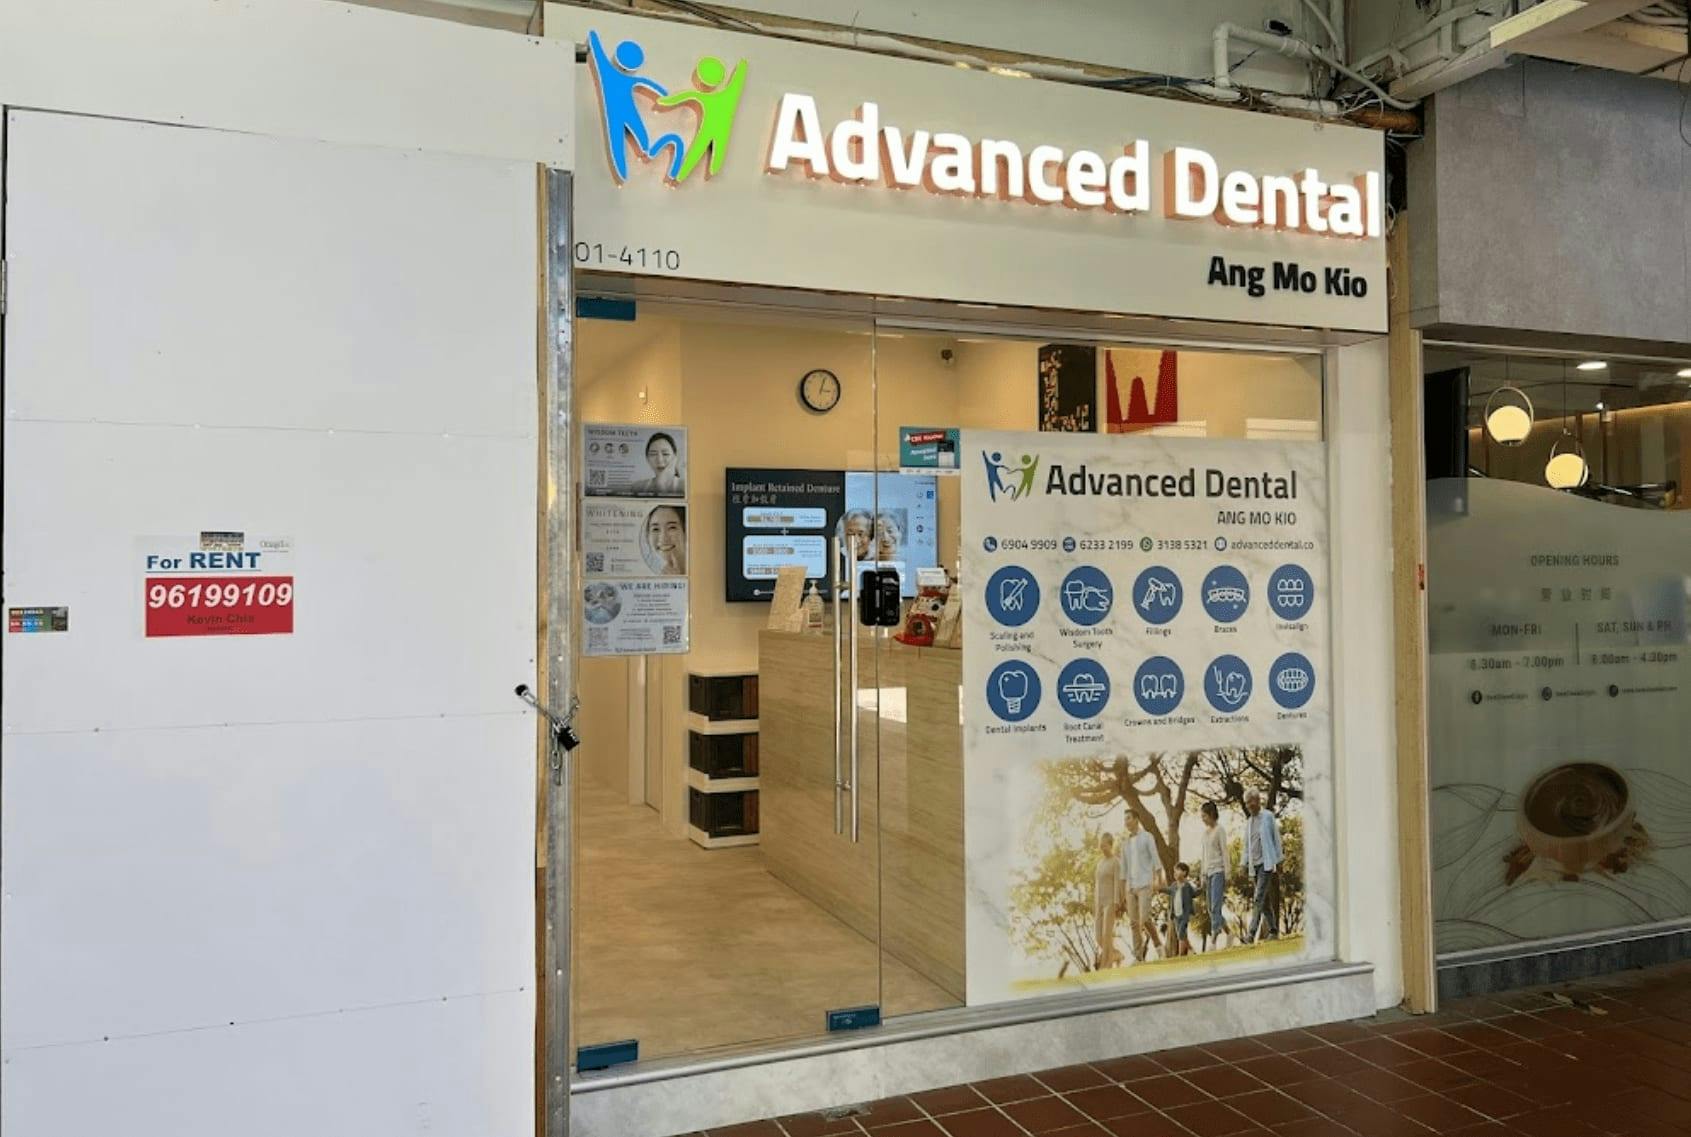 Advanced Dental Ang Mo Kio